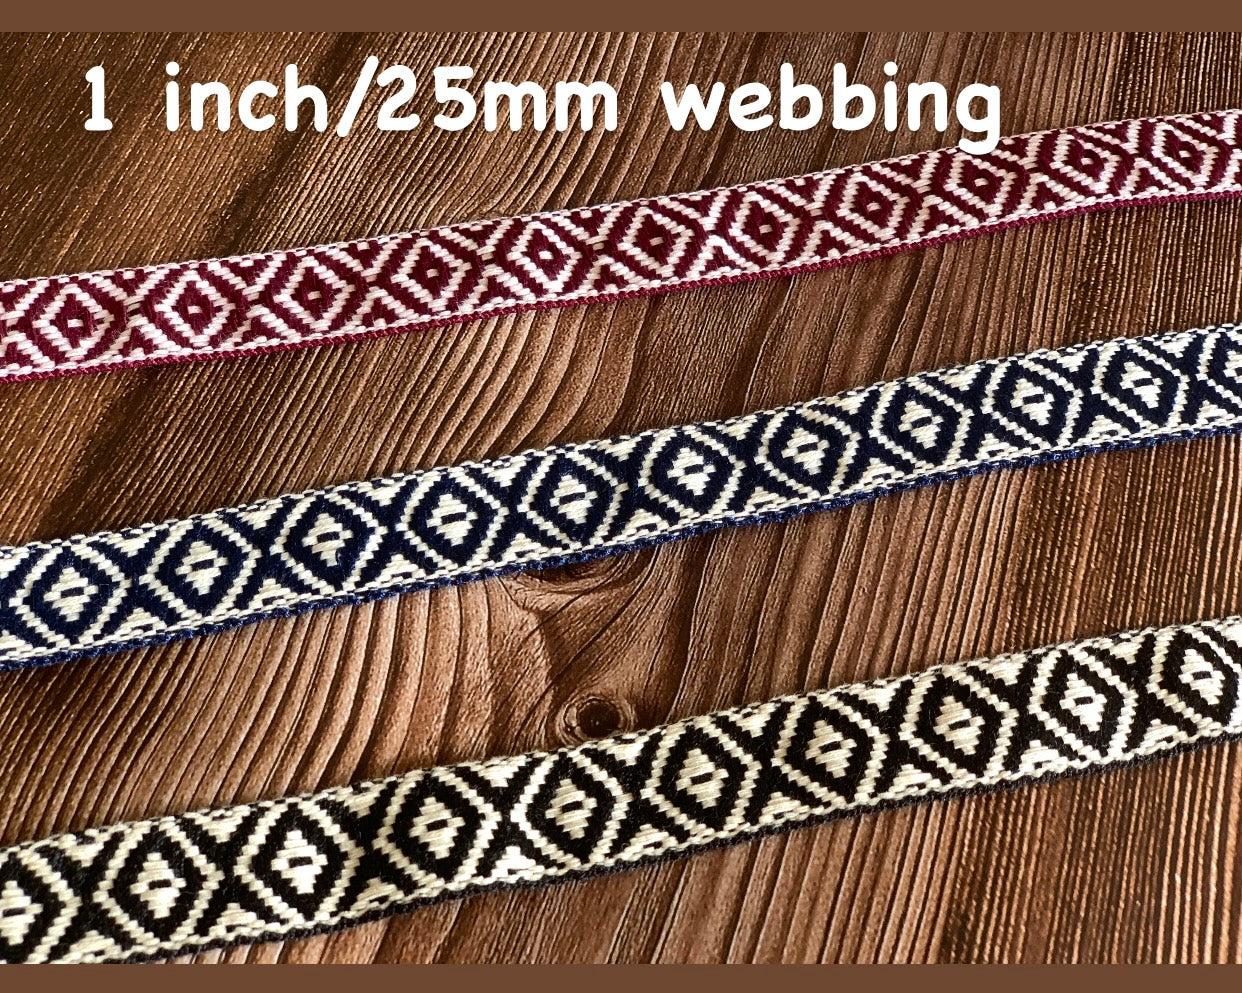 2.5cm/1 inch patterned webbing, Pattern A